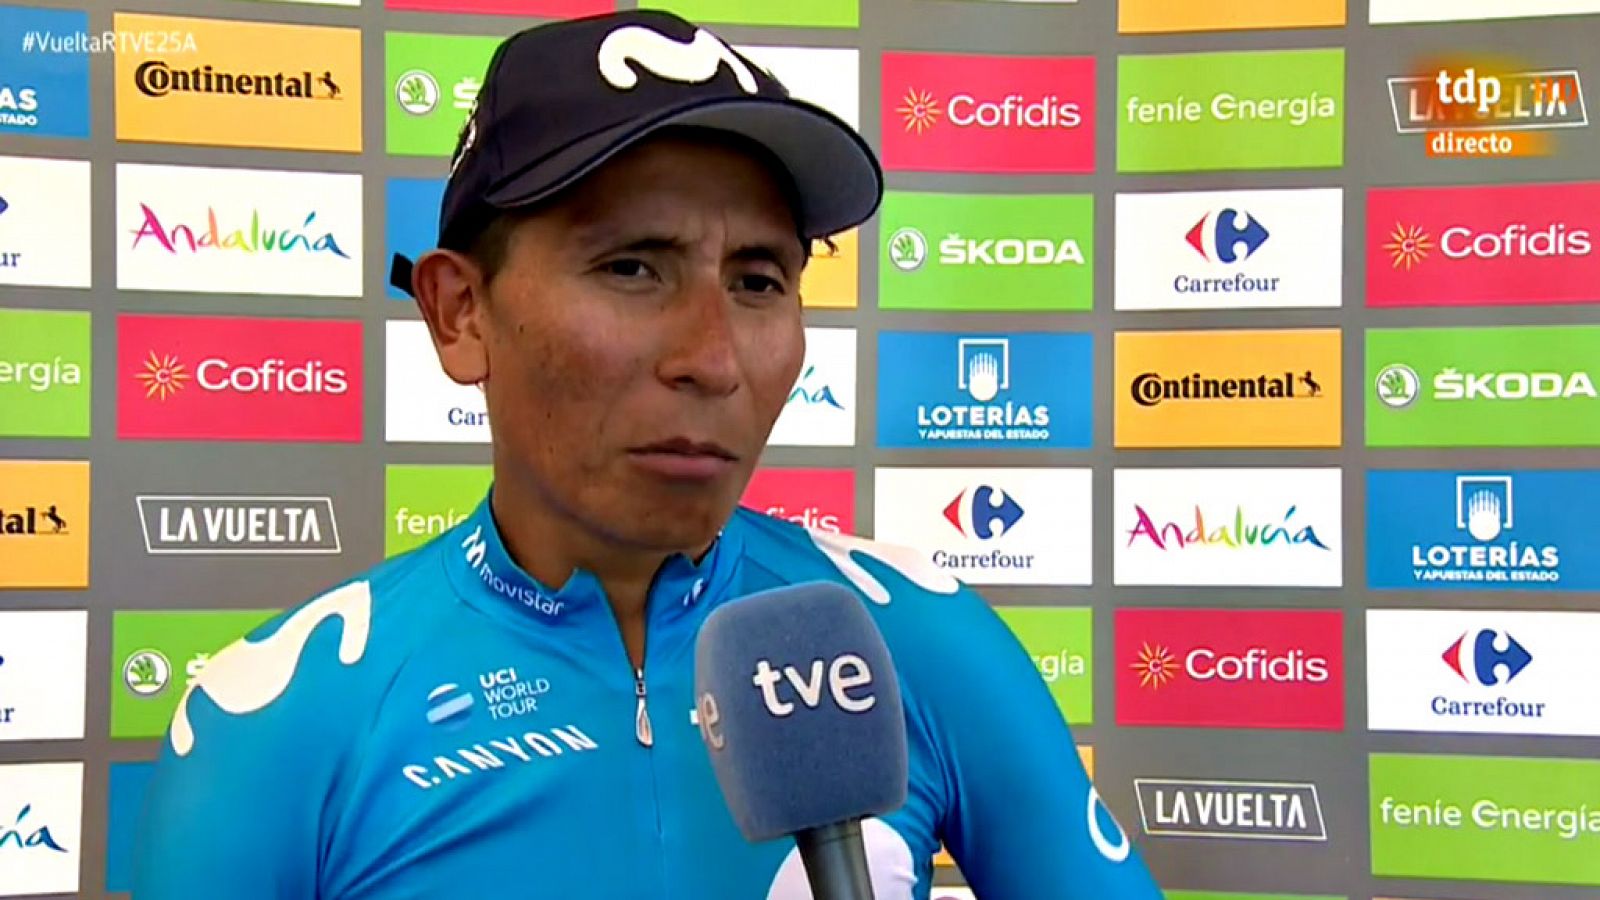 El ciclista colombiano Nairo Quintana (Movistar Team) se adjudicó este domingo la segunda etapa de la Vuelta a España 2019.